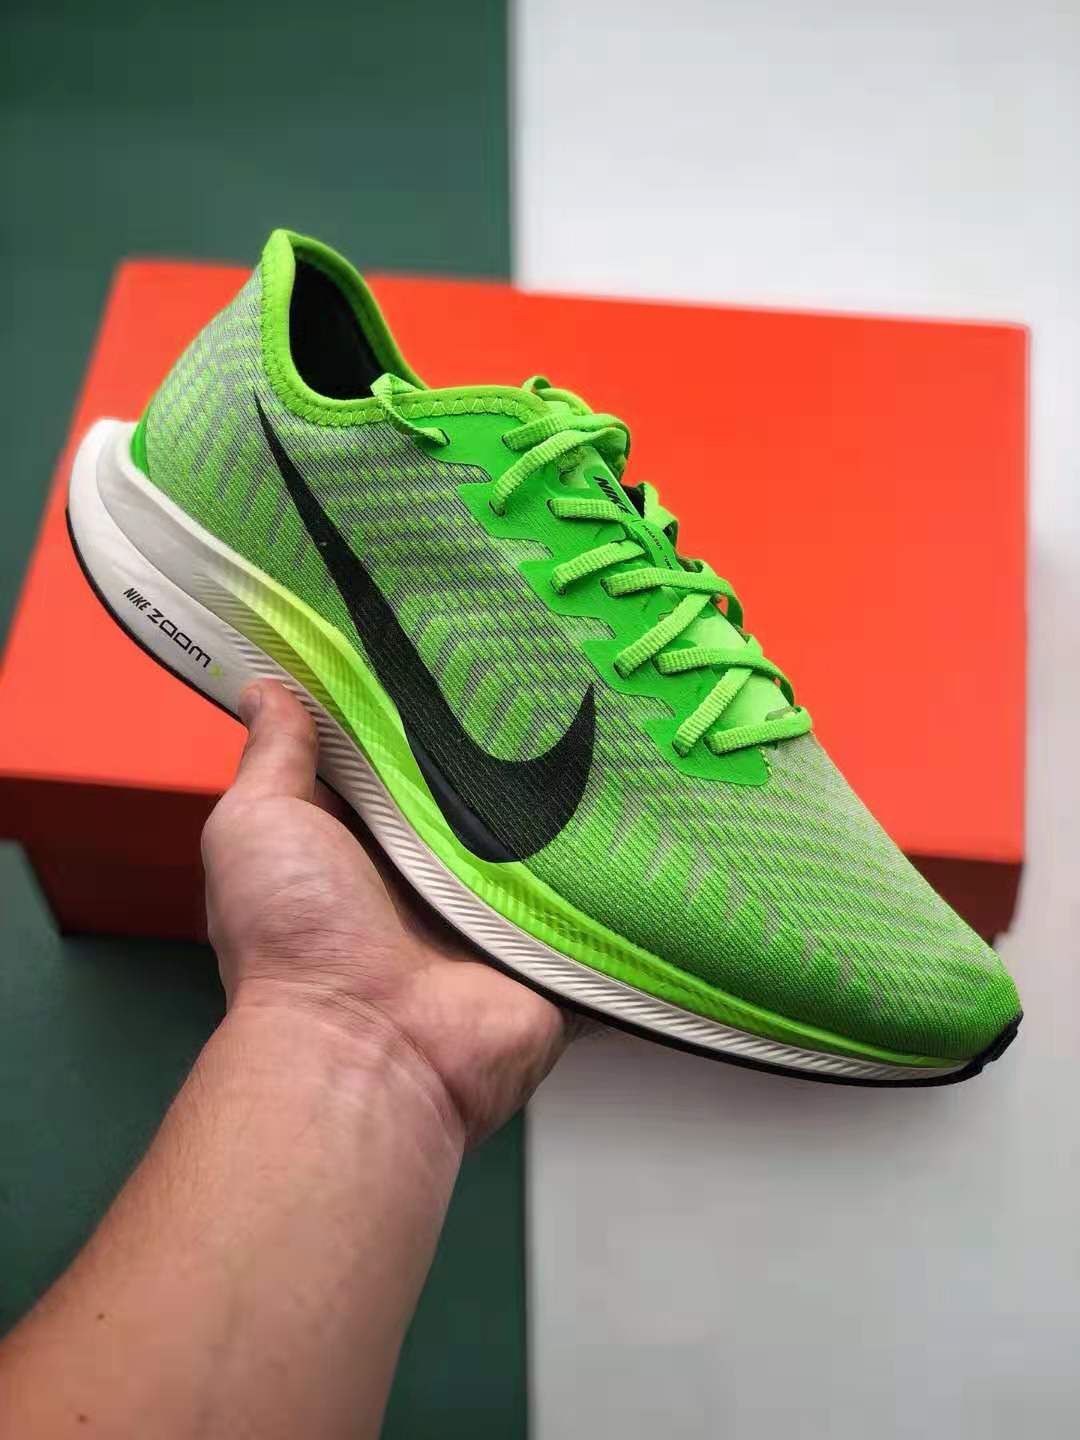 Nike Zoom Pegasus Turbo 2 Electric Green: Premium Running Shoe (AT2863 300)